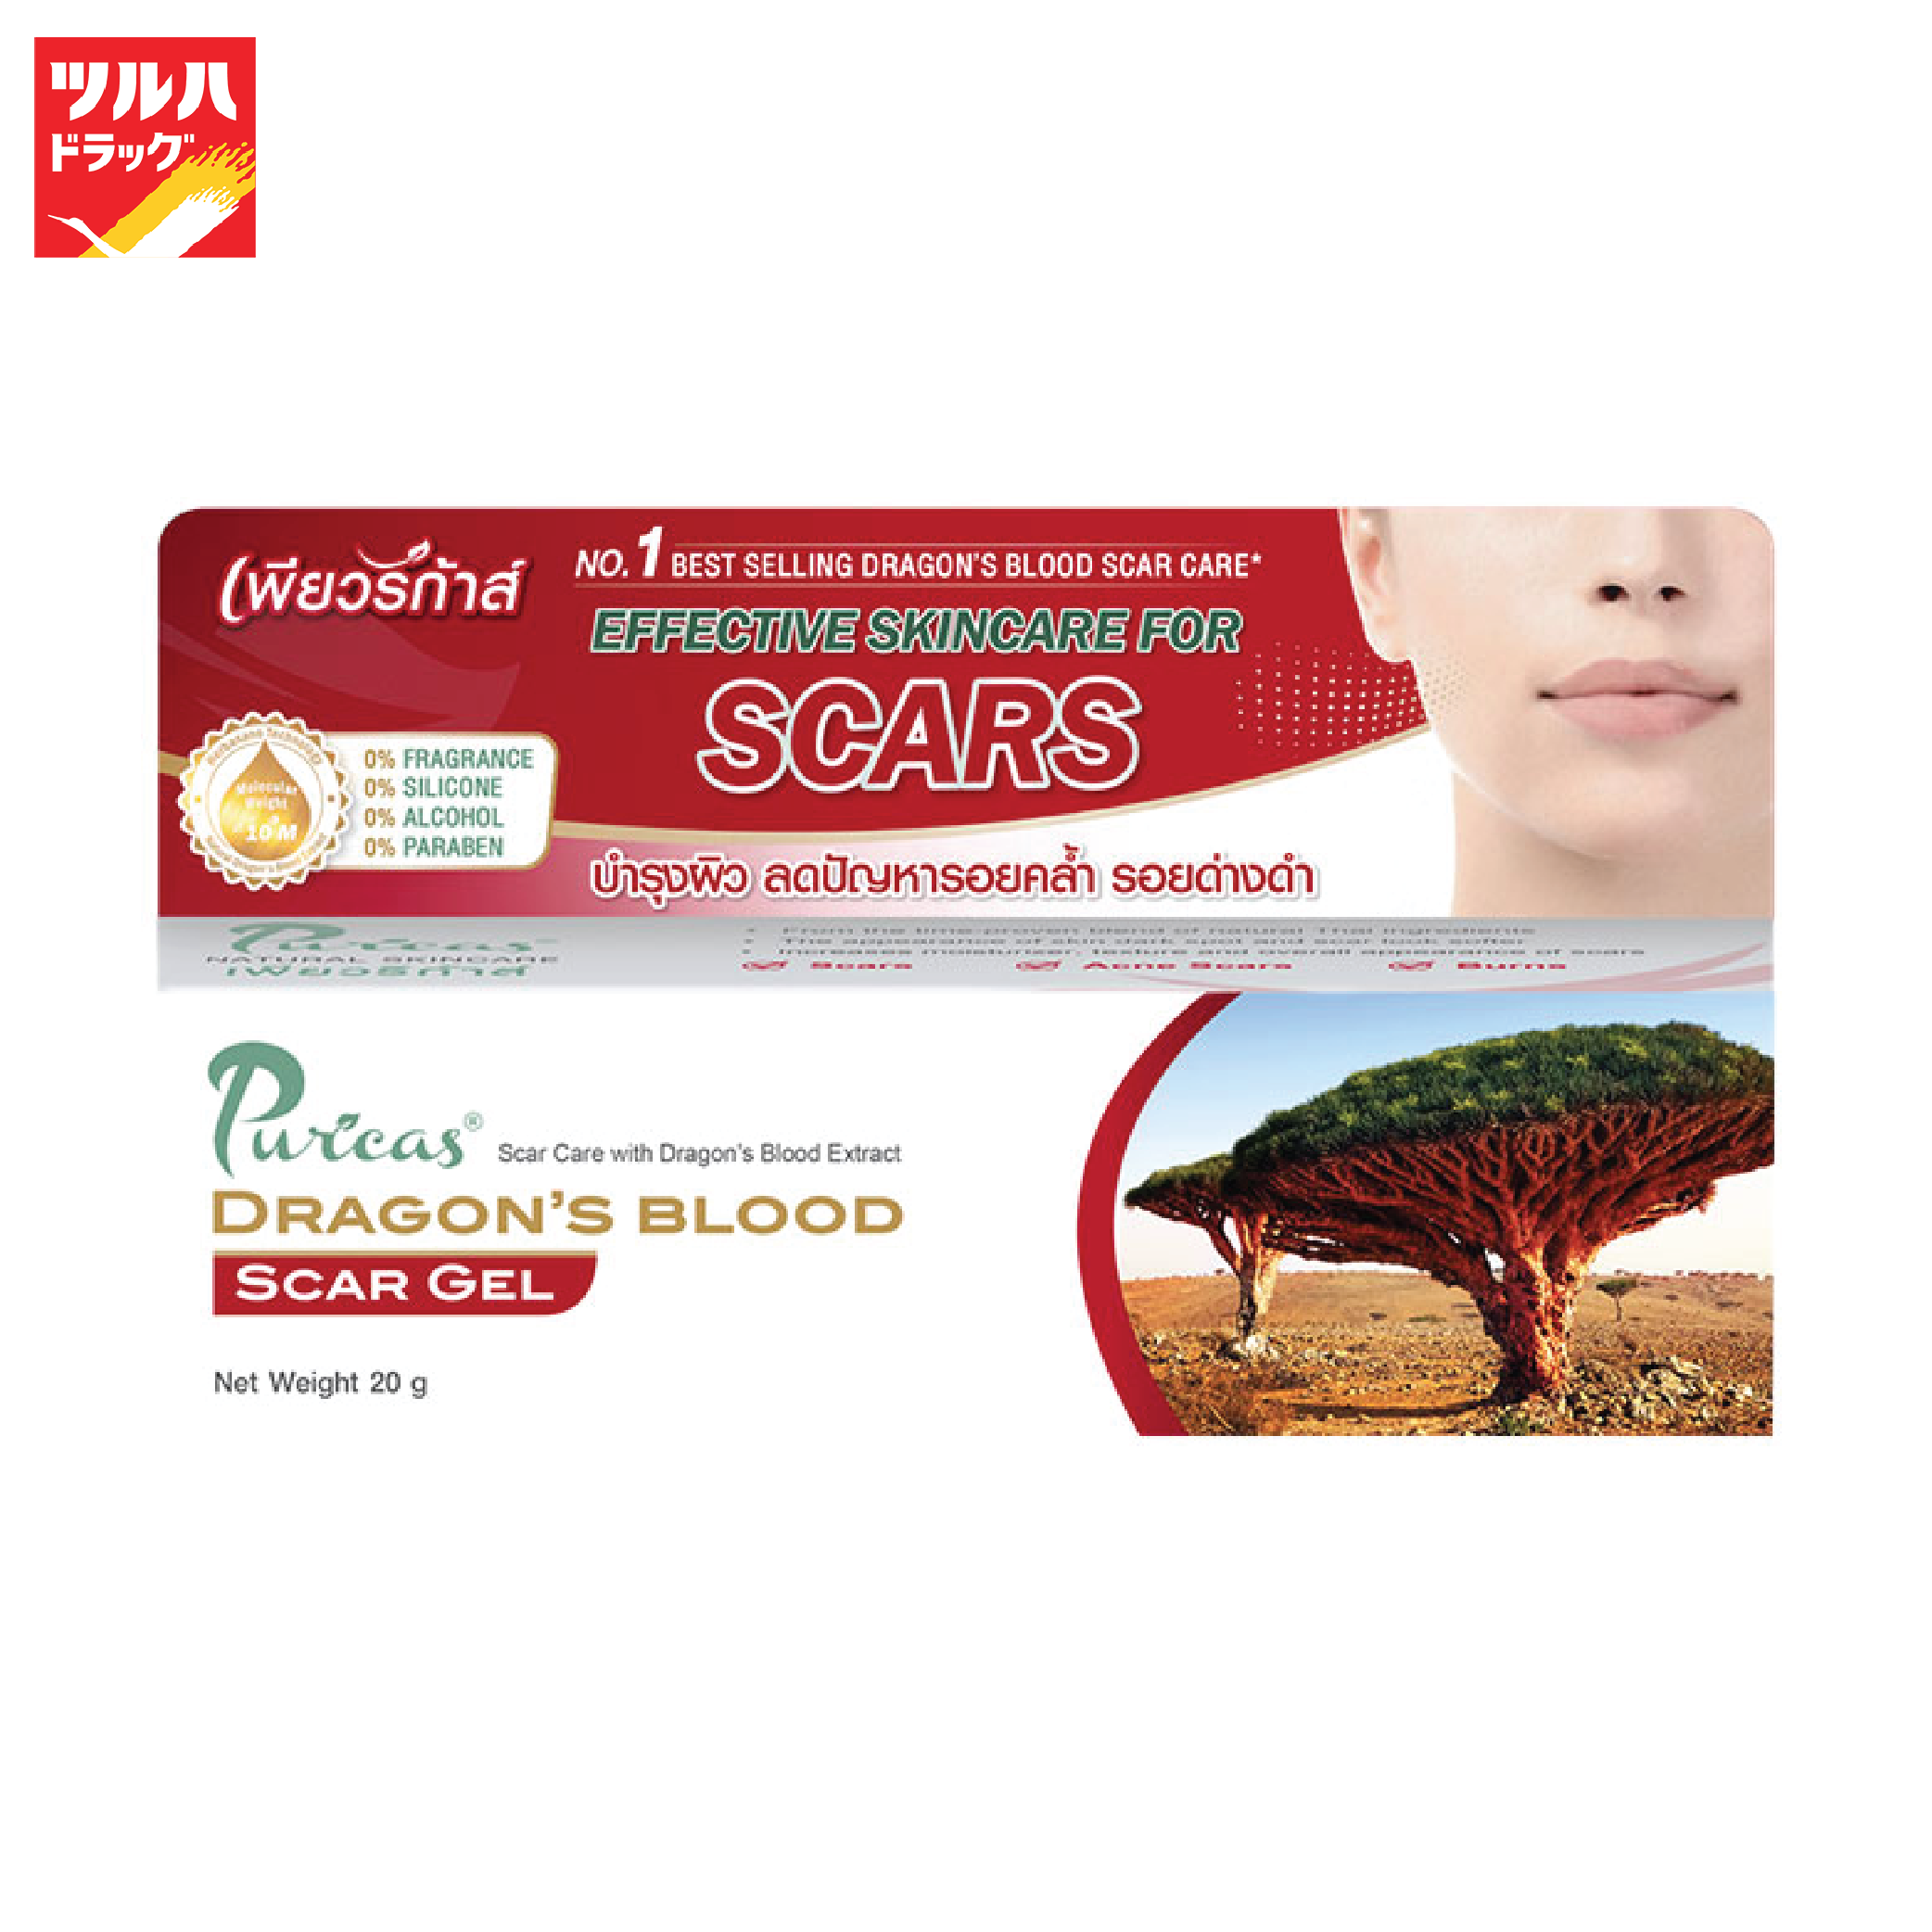 โปรโมชั่น Puricas Dragon s Blood Scar Gel 20 g. / เพียวริก้าส์ เจลรักษาแผลเป็น 20ก.